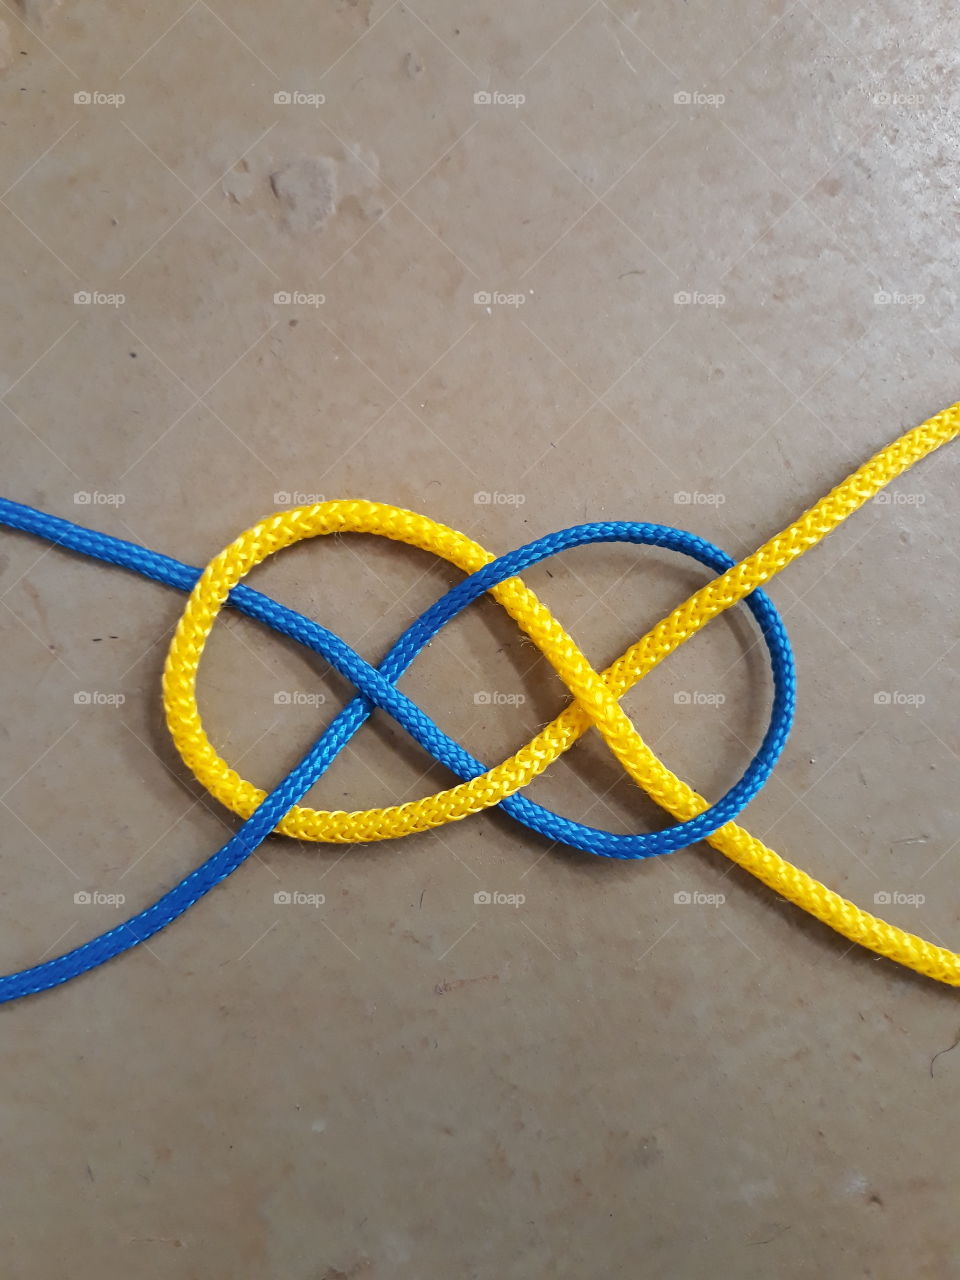 ordinary knot